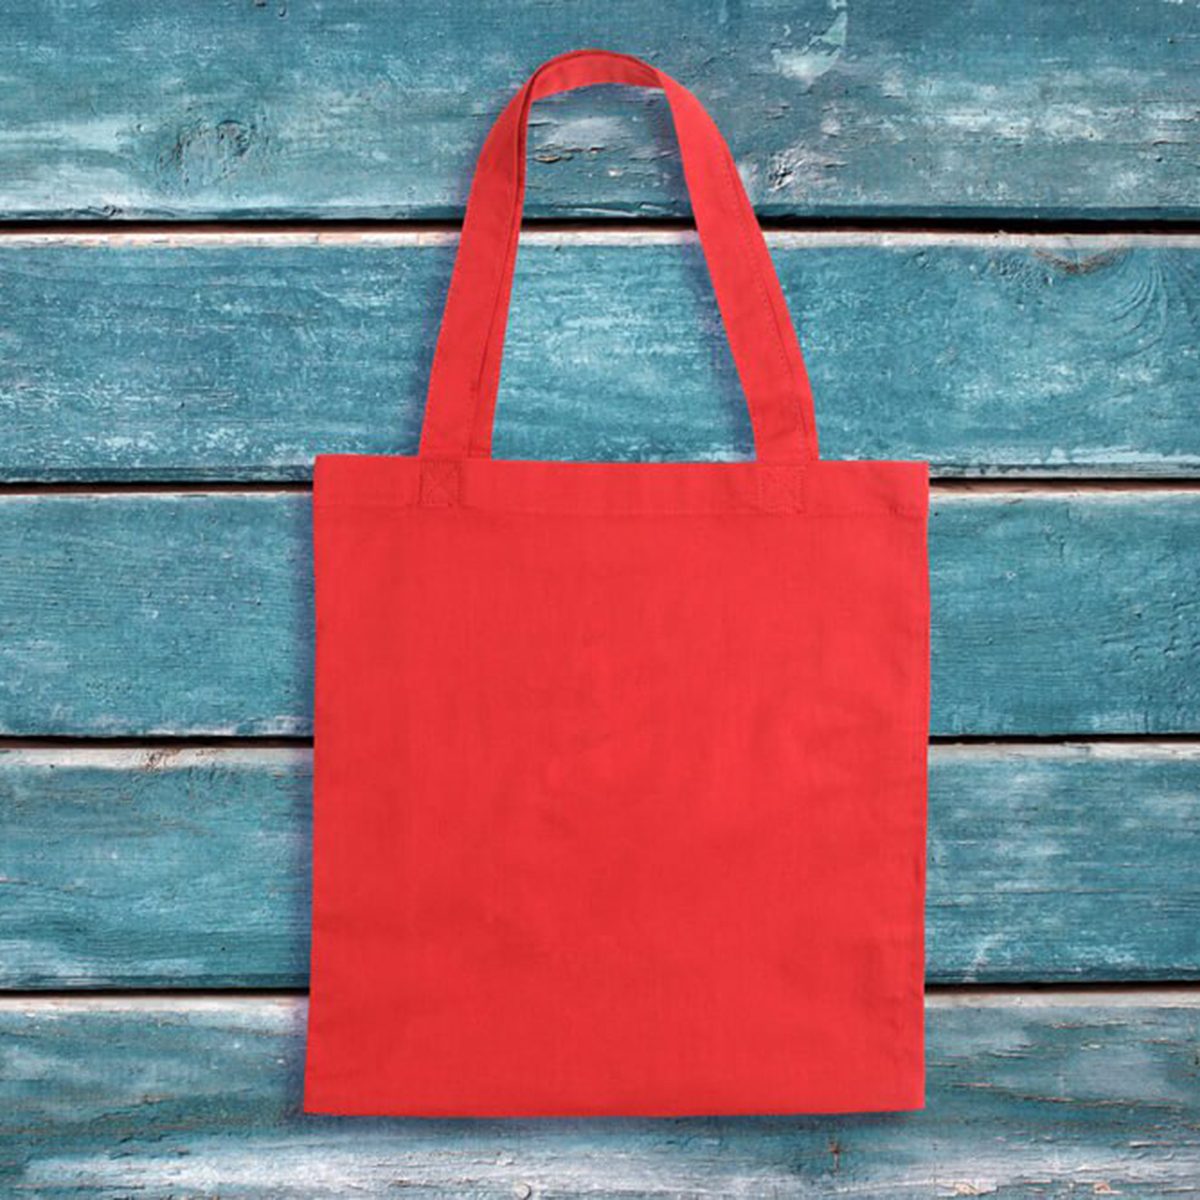 Red tote bag